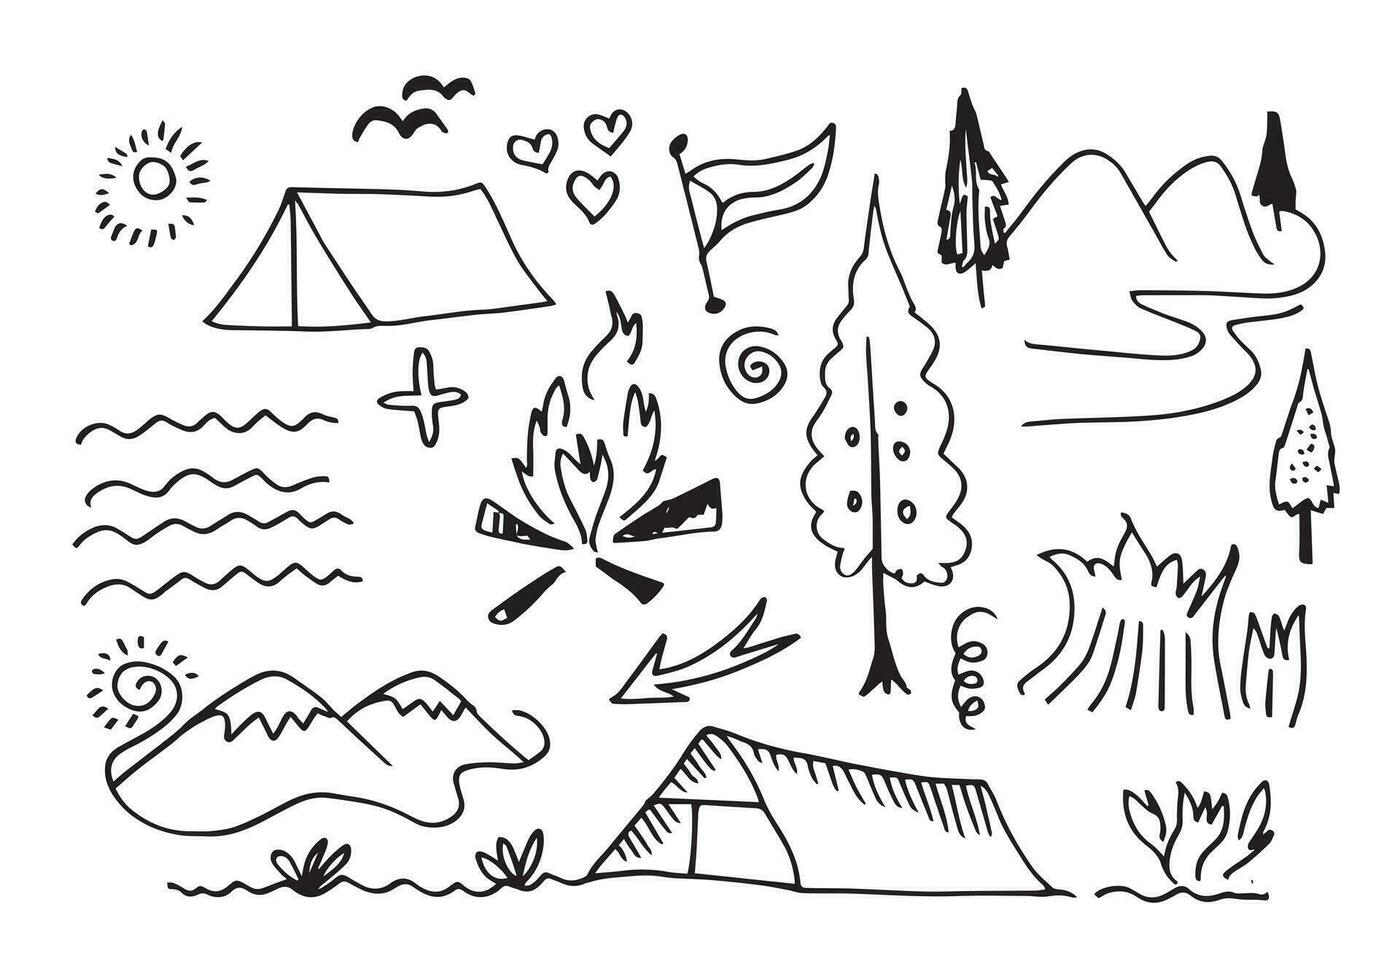 Elementos de camping y senderismo dibujados a mano, aislados en fondo blanco. Iconos de garabatos de camping boceto hecho a mano. vector